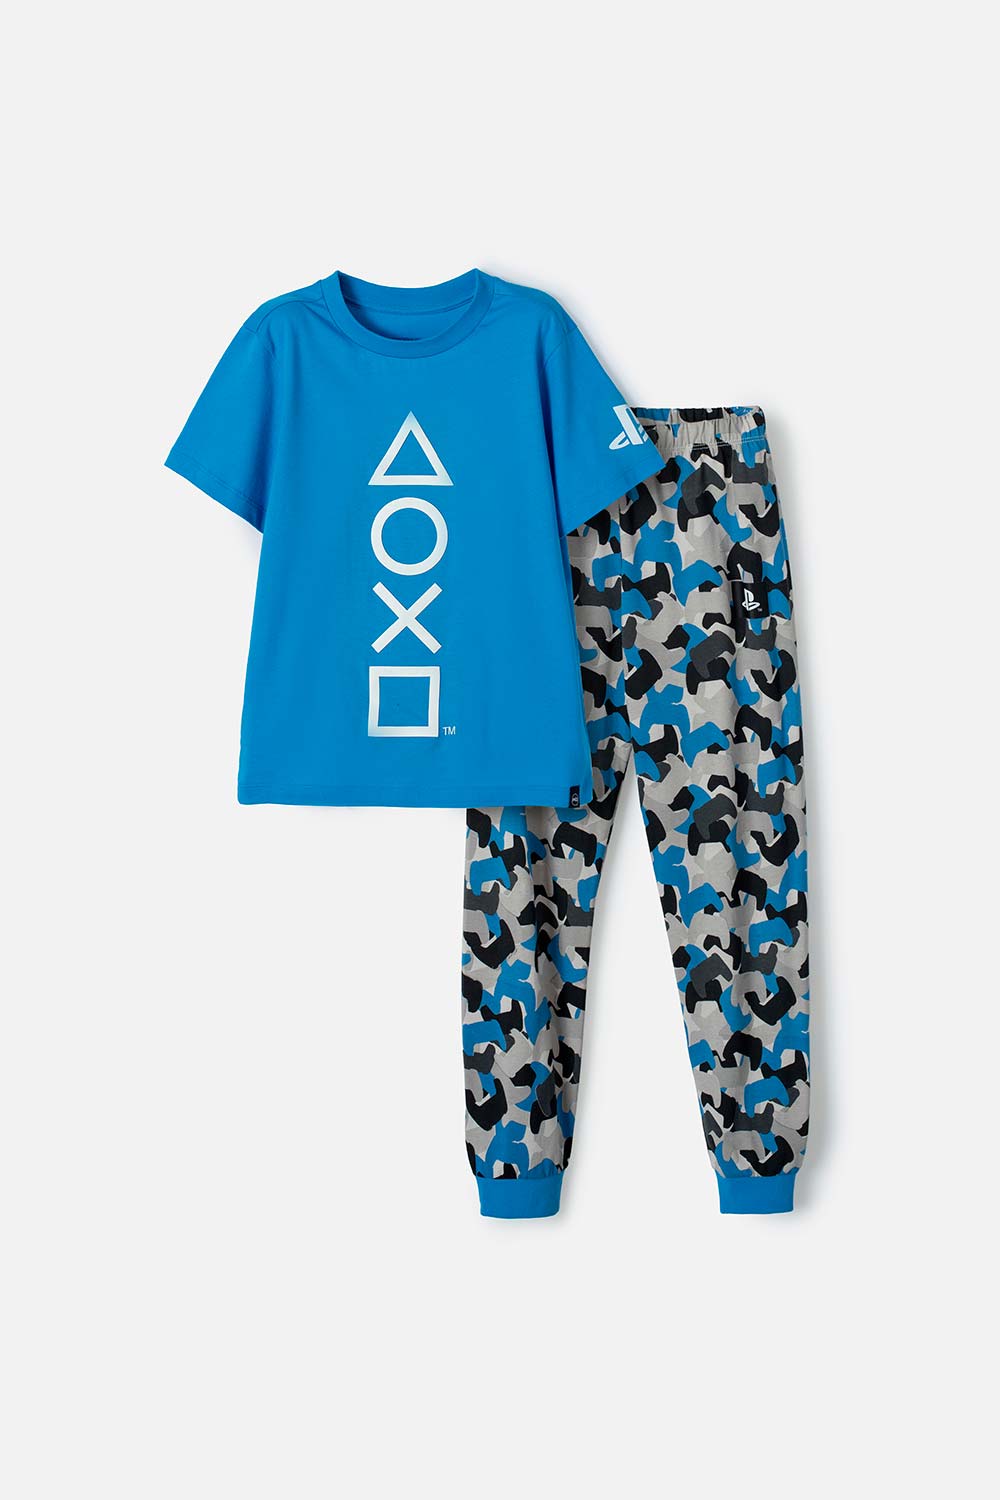 Pijama de Play Station azul de pantalón largo para niño 6-0